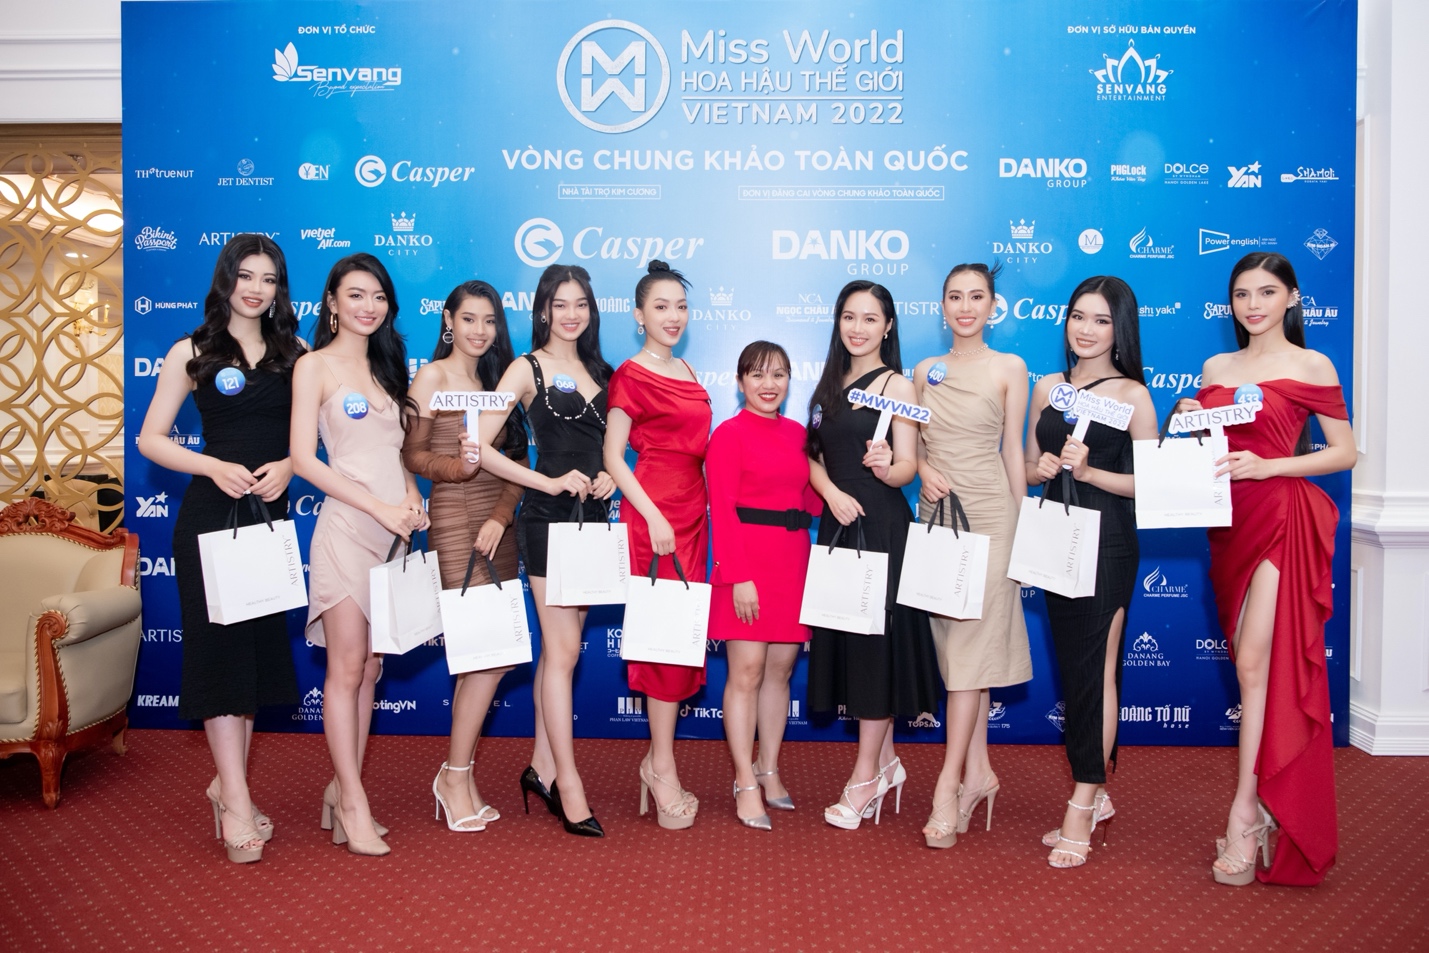 Artistry tiếp tục đồng hành cùng Miss World Việt Nam 2022 nâng niu nhan sắc Việt - Ảnh 1.